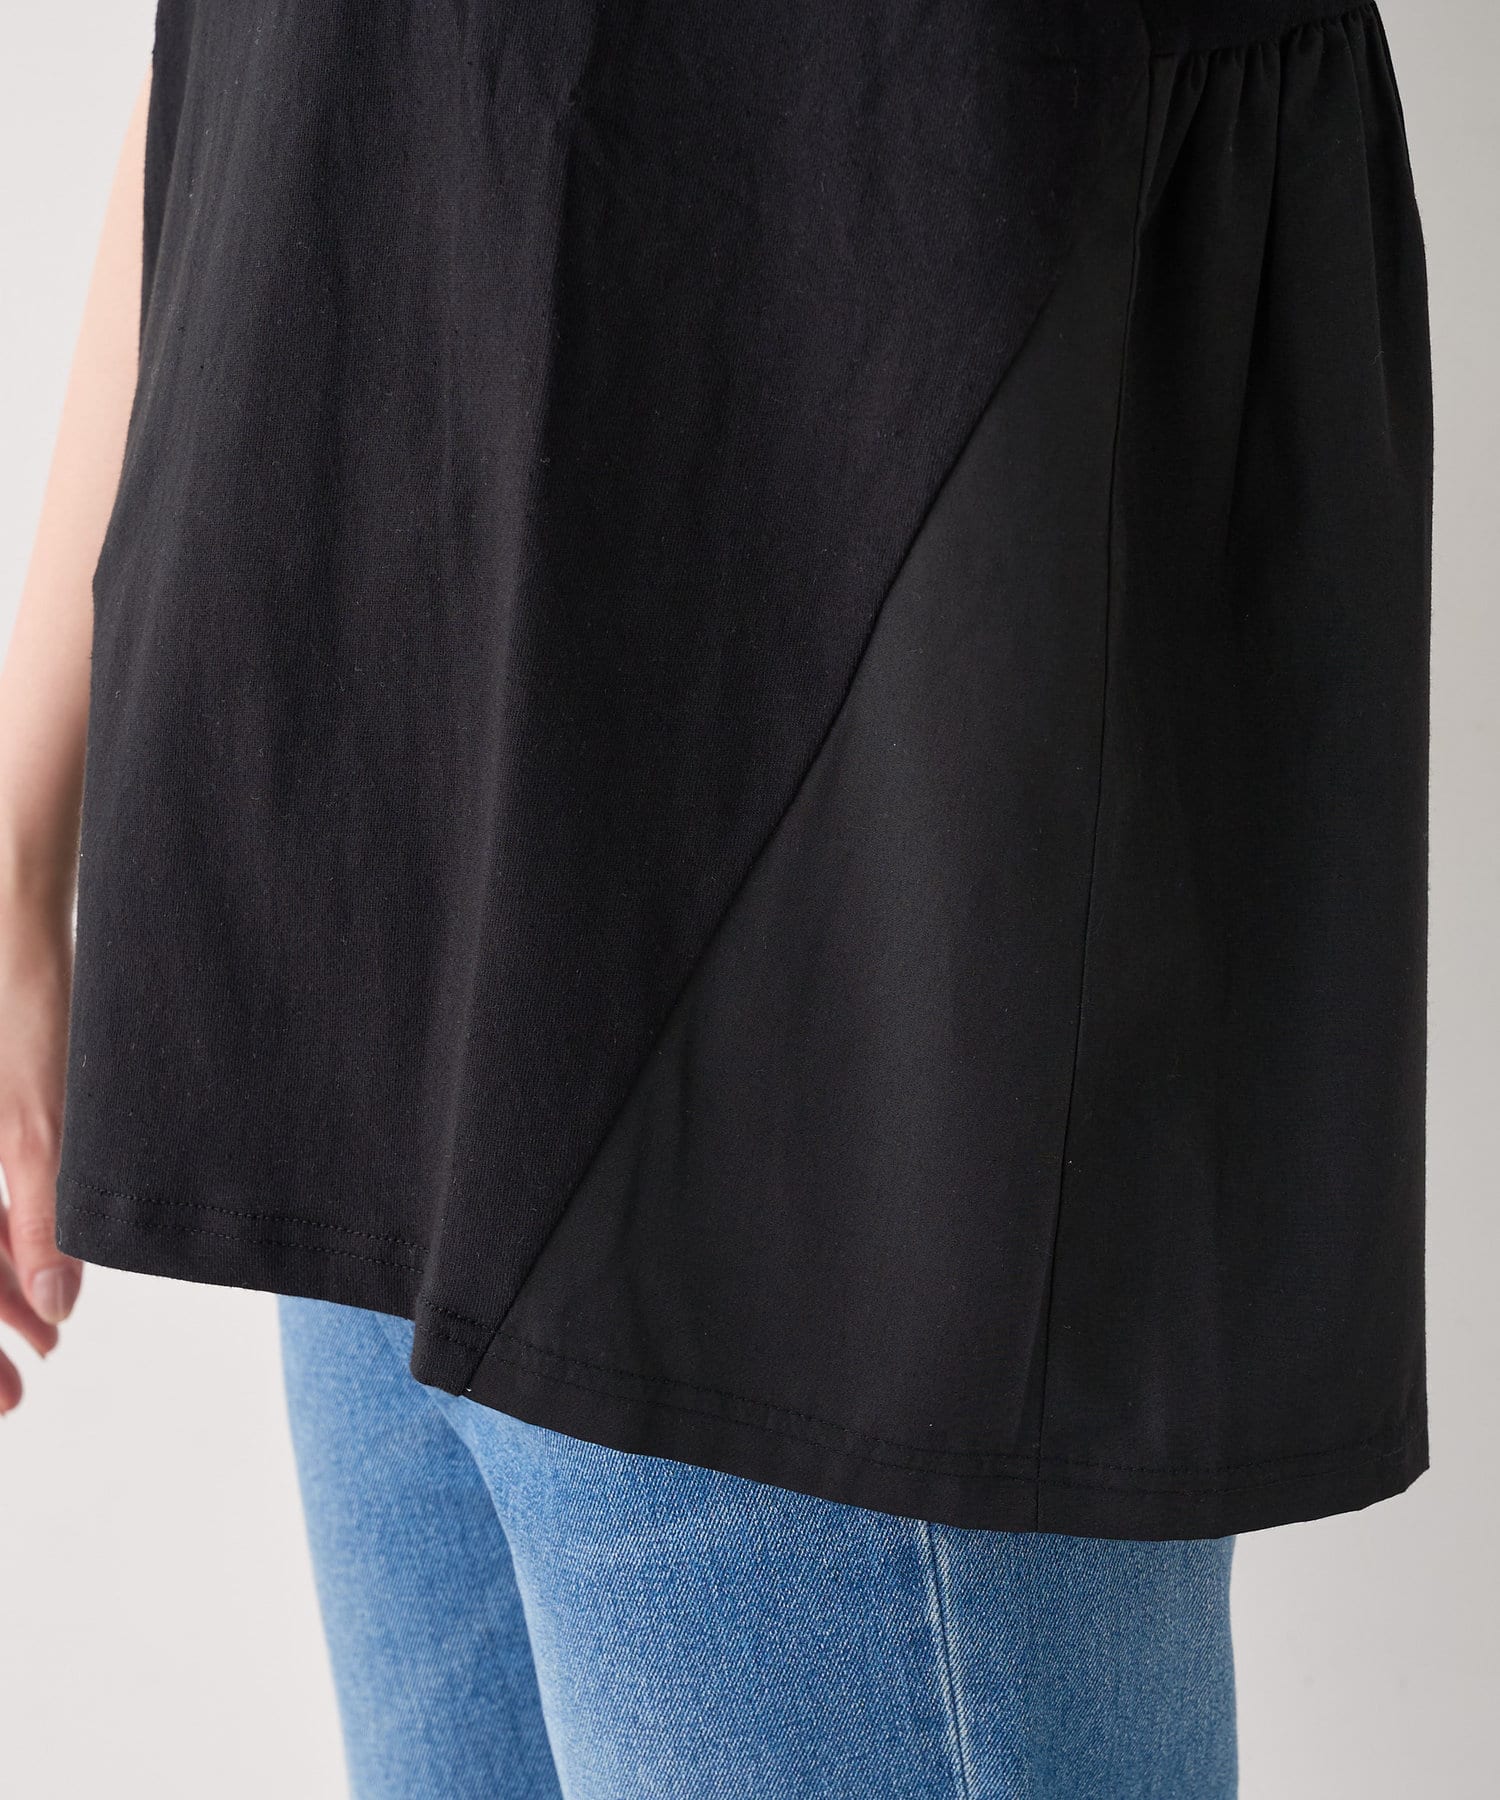 natural couture(ナチュラルクチュール) USAコットンバックフリルデザインTシャツ